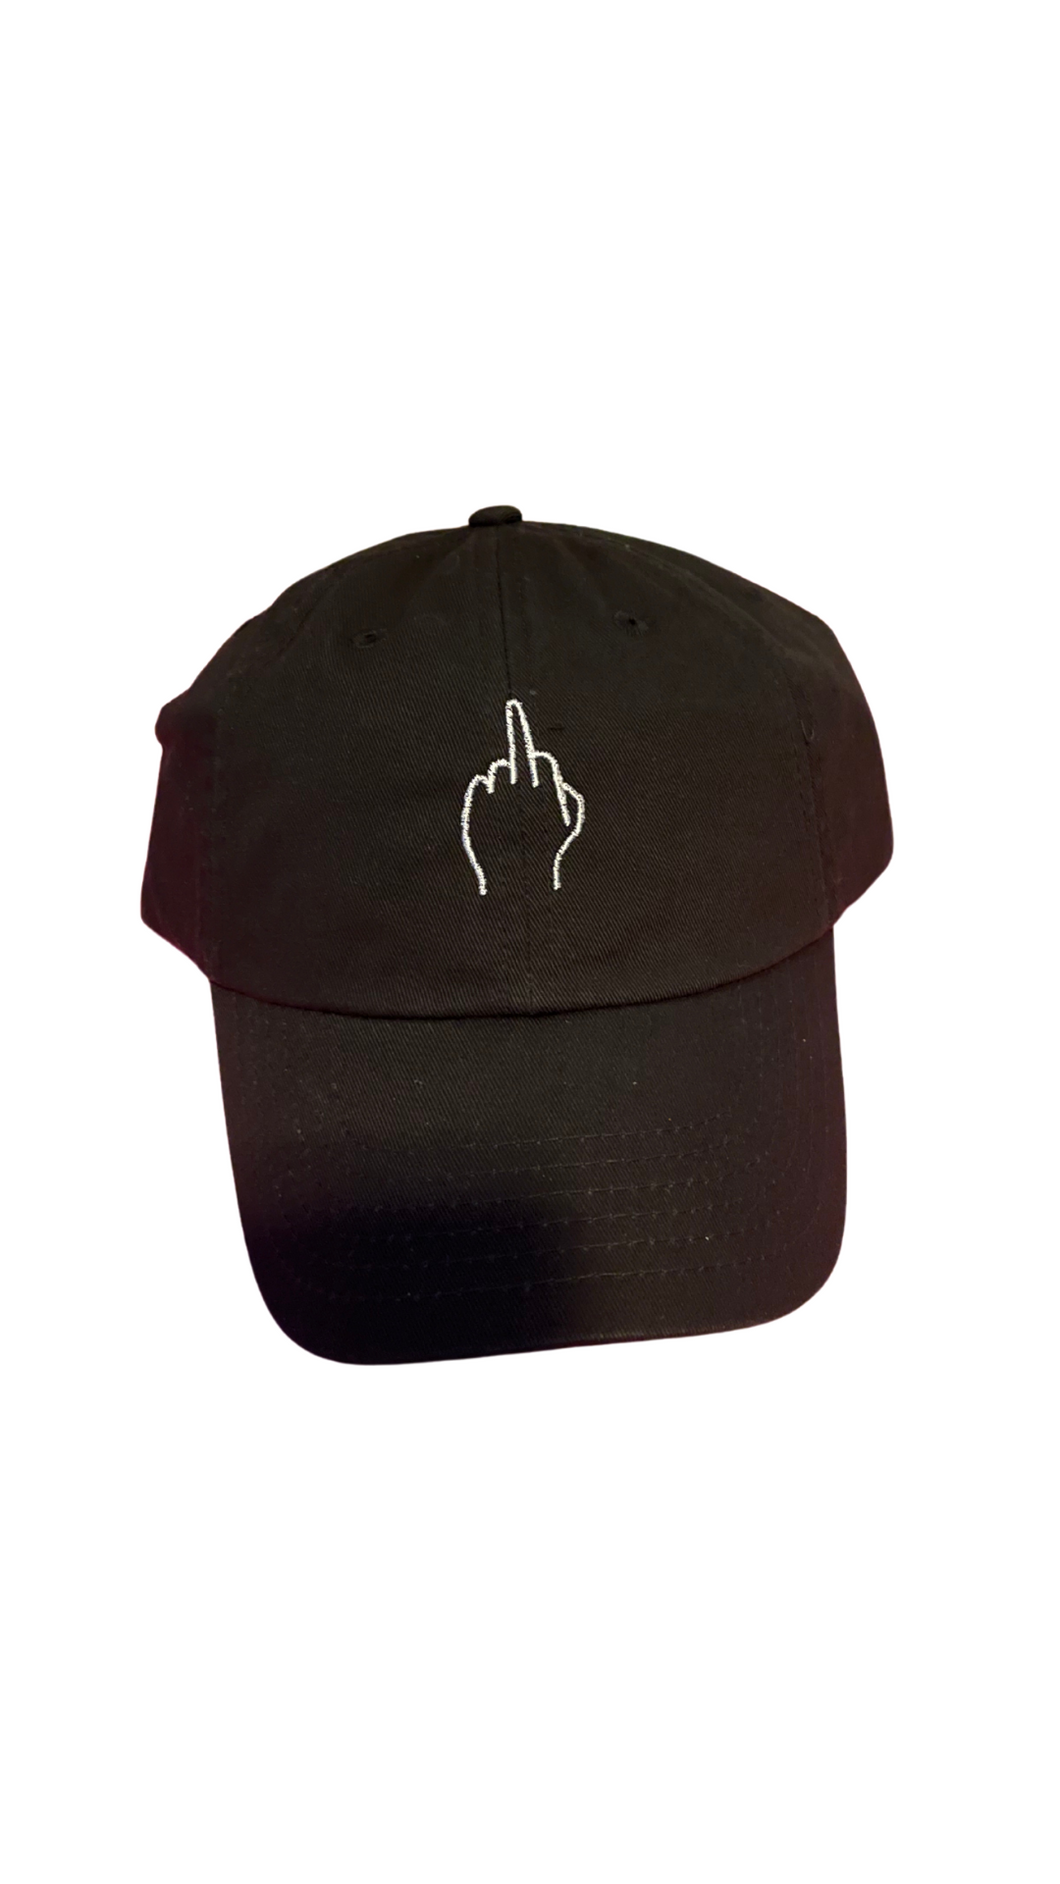 Middle Finger Hat